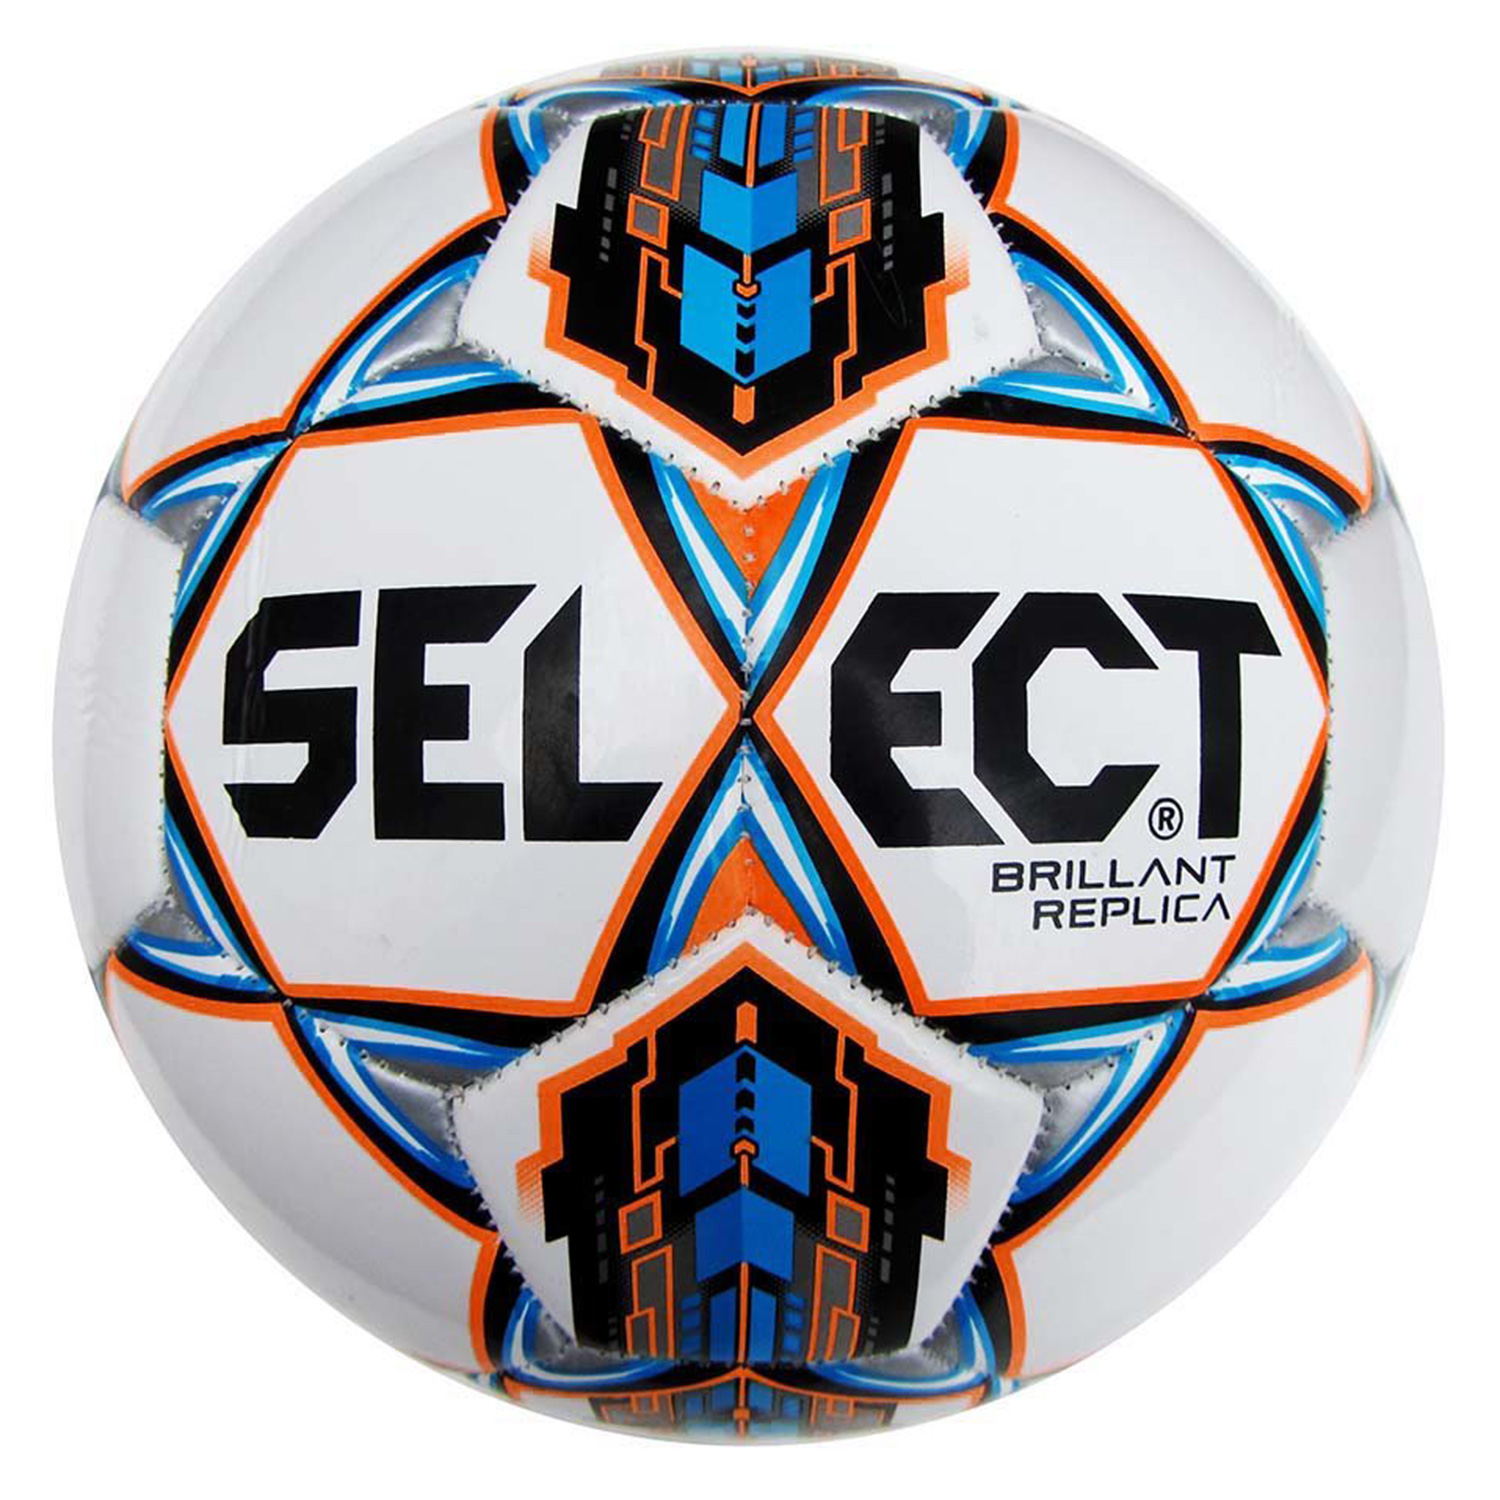 Футбольный мяч select. Футбольный мяч select brillant Replica 811608. Футбольный мяч select Brilliant Replica 4. Футбольный мяч select brillant Replica 5.